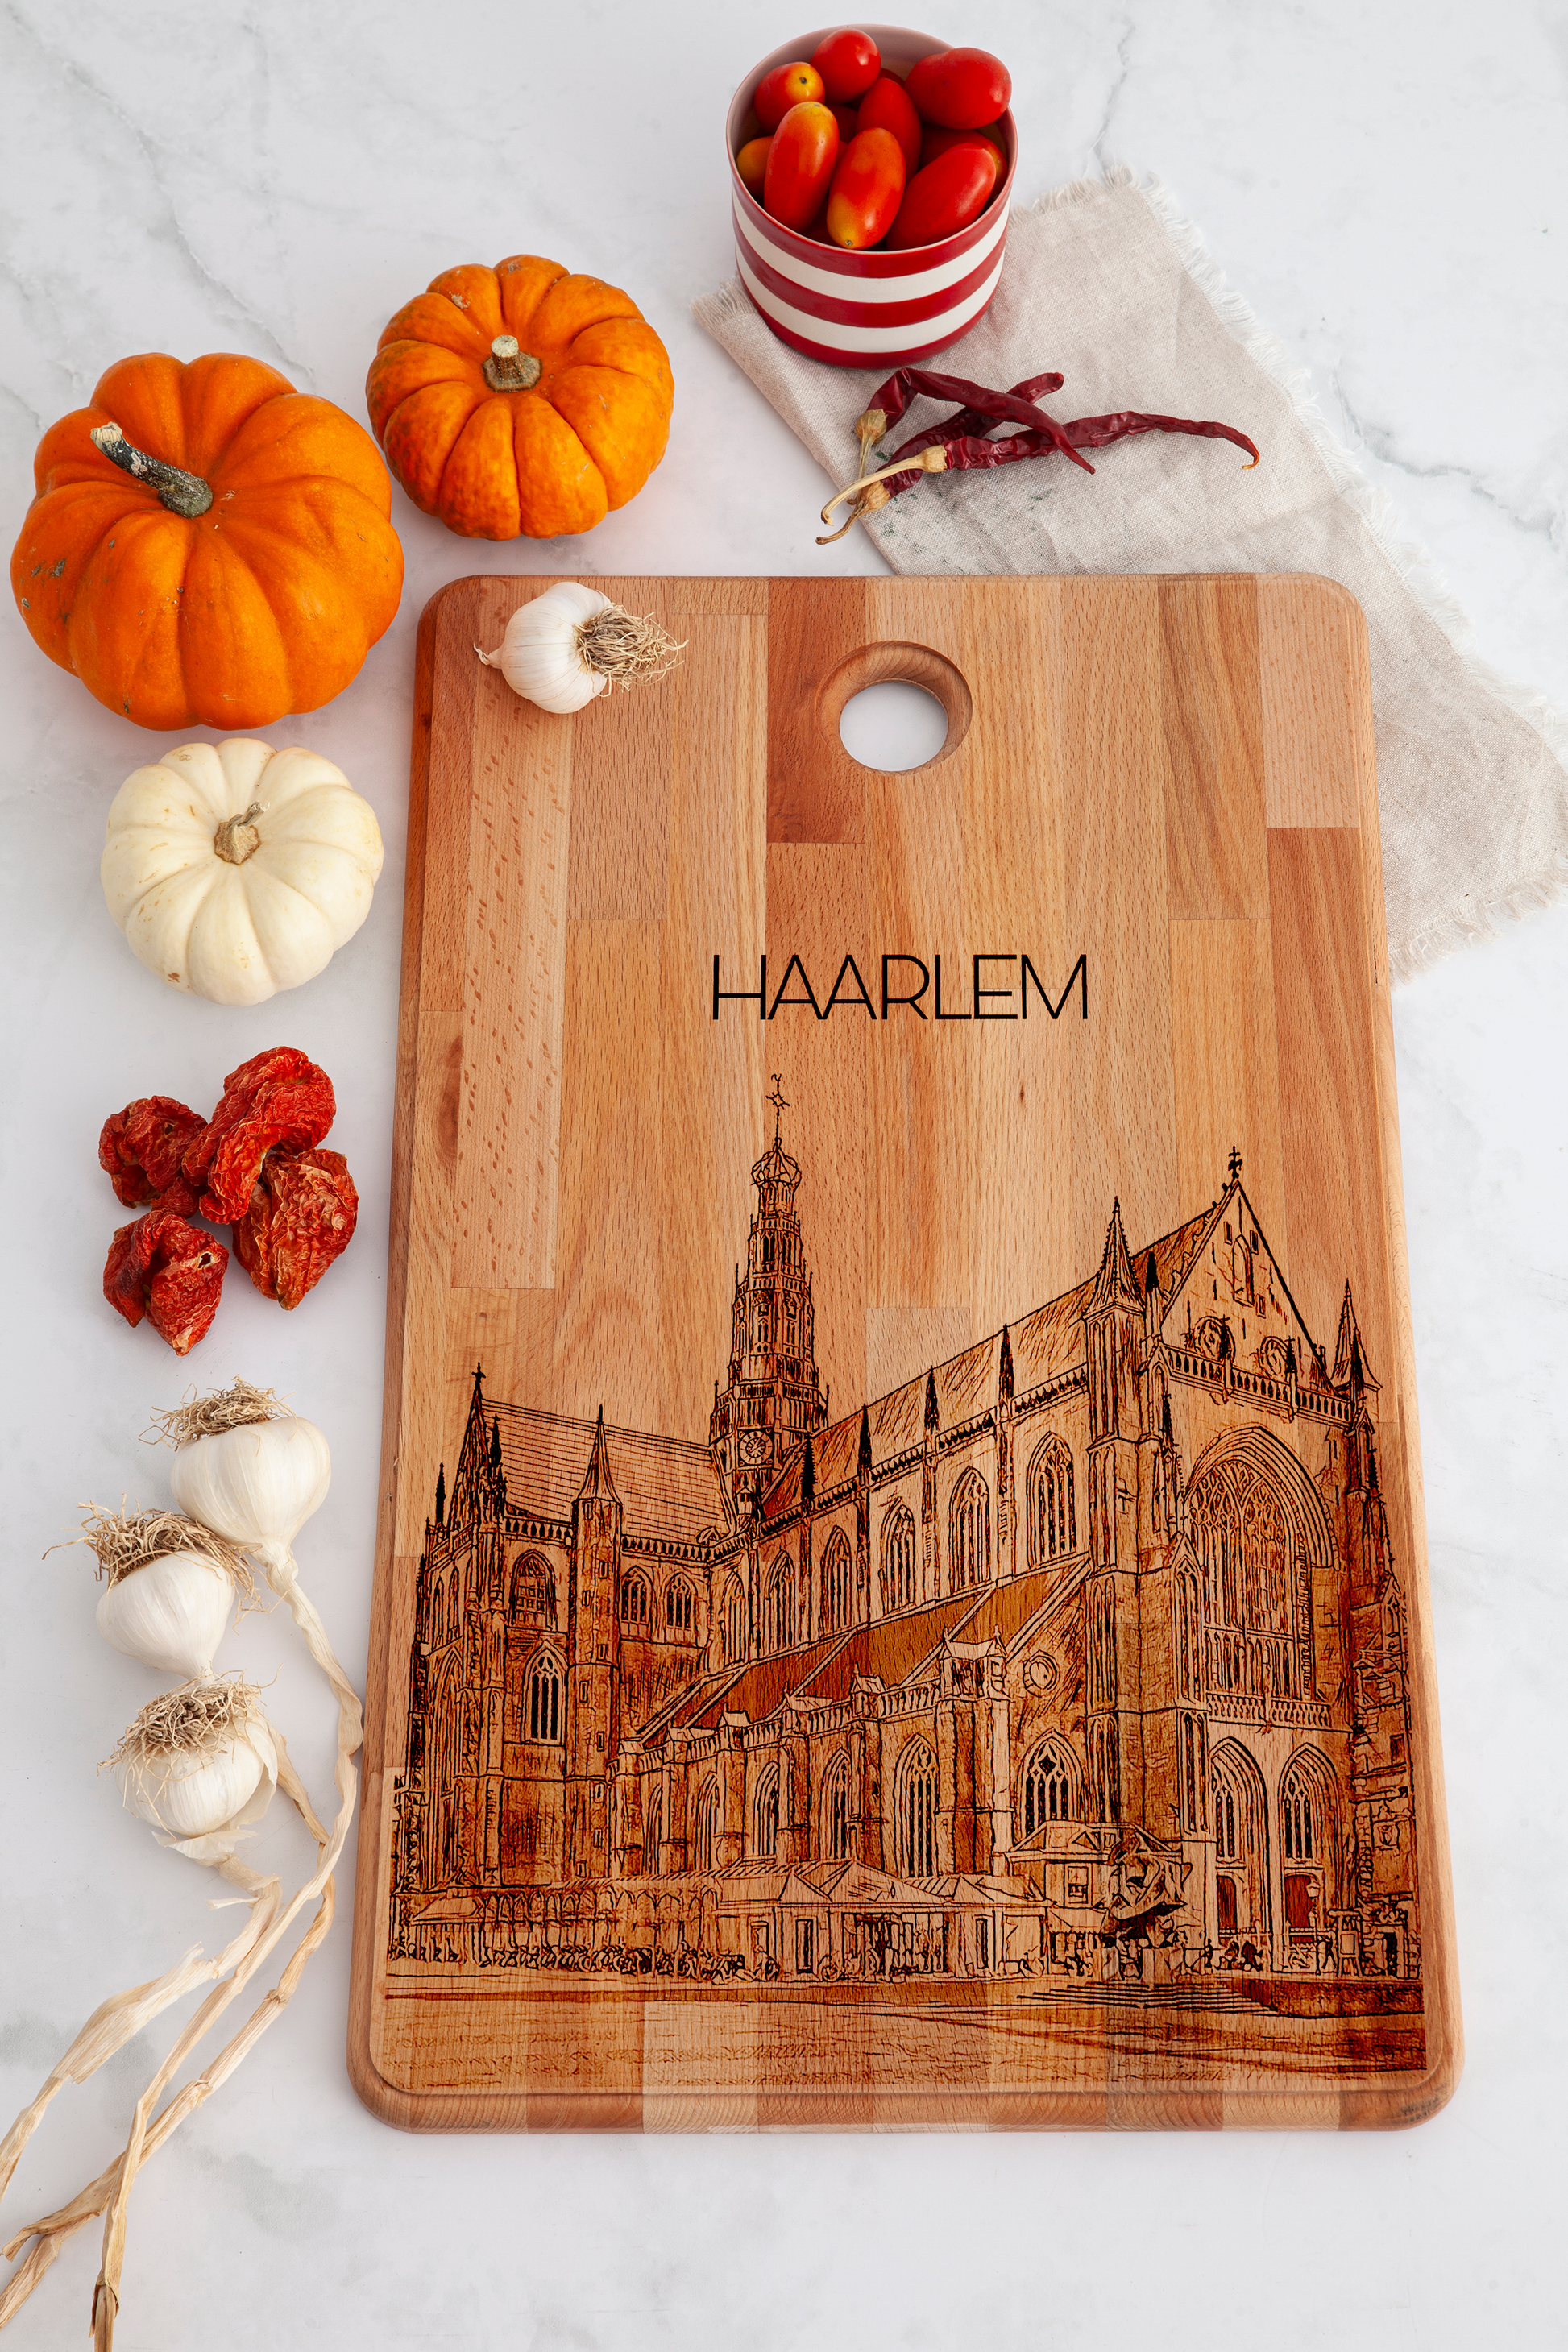 Haarlem, Grote Kerk, cutting board, on countertop